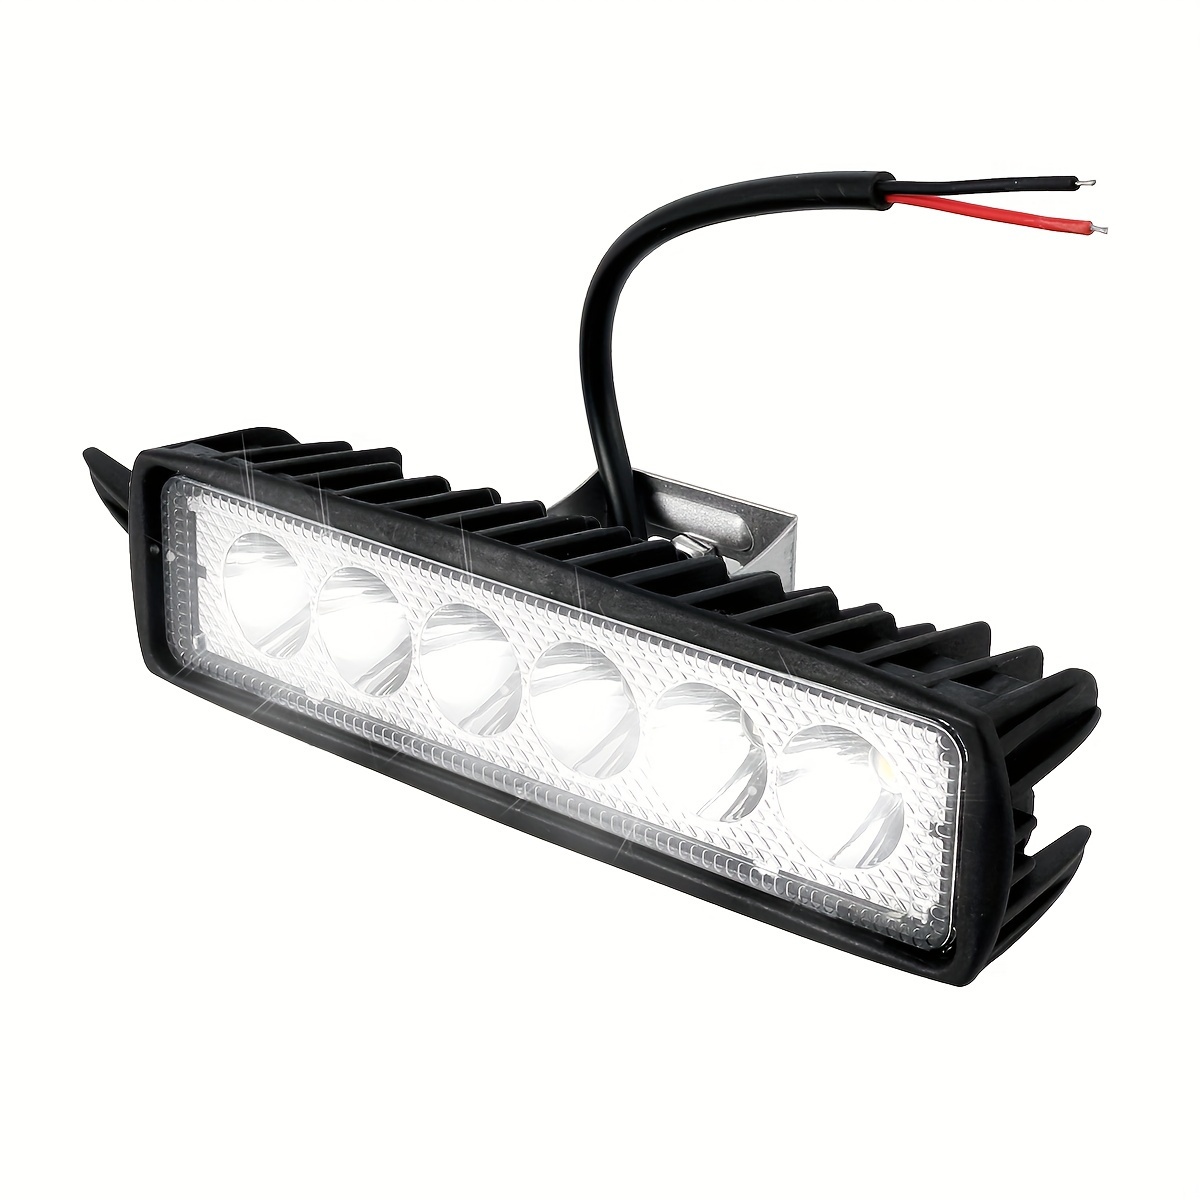 5 Zoll Fahrlicht für Autos Motorrad LED Bar Nebelscheinwerfer Scheinwerfer  DRL für Auto Niva Lada Atv 6led